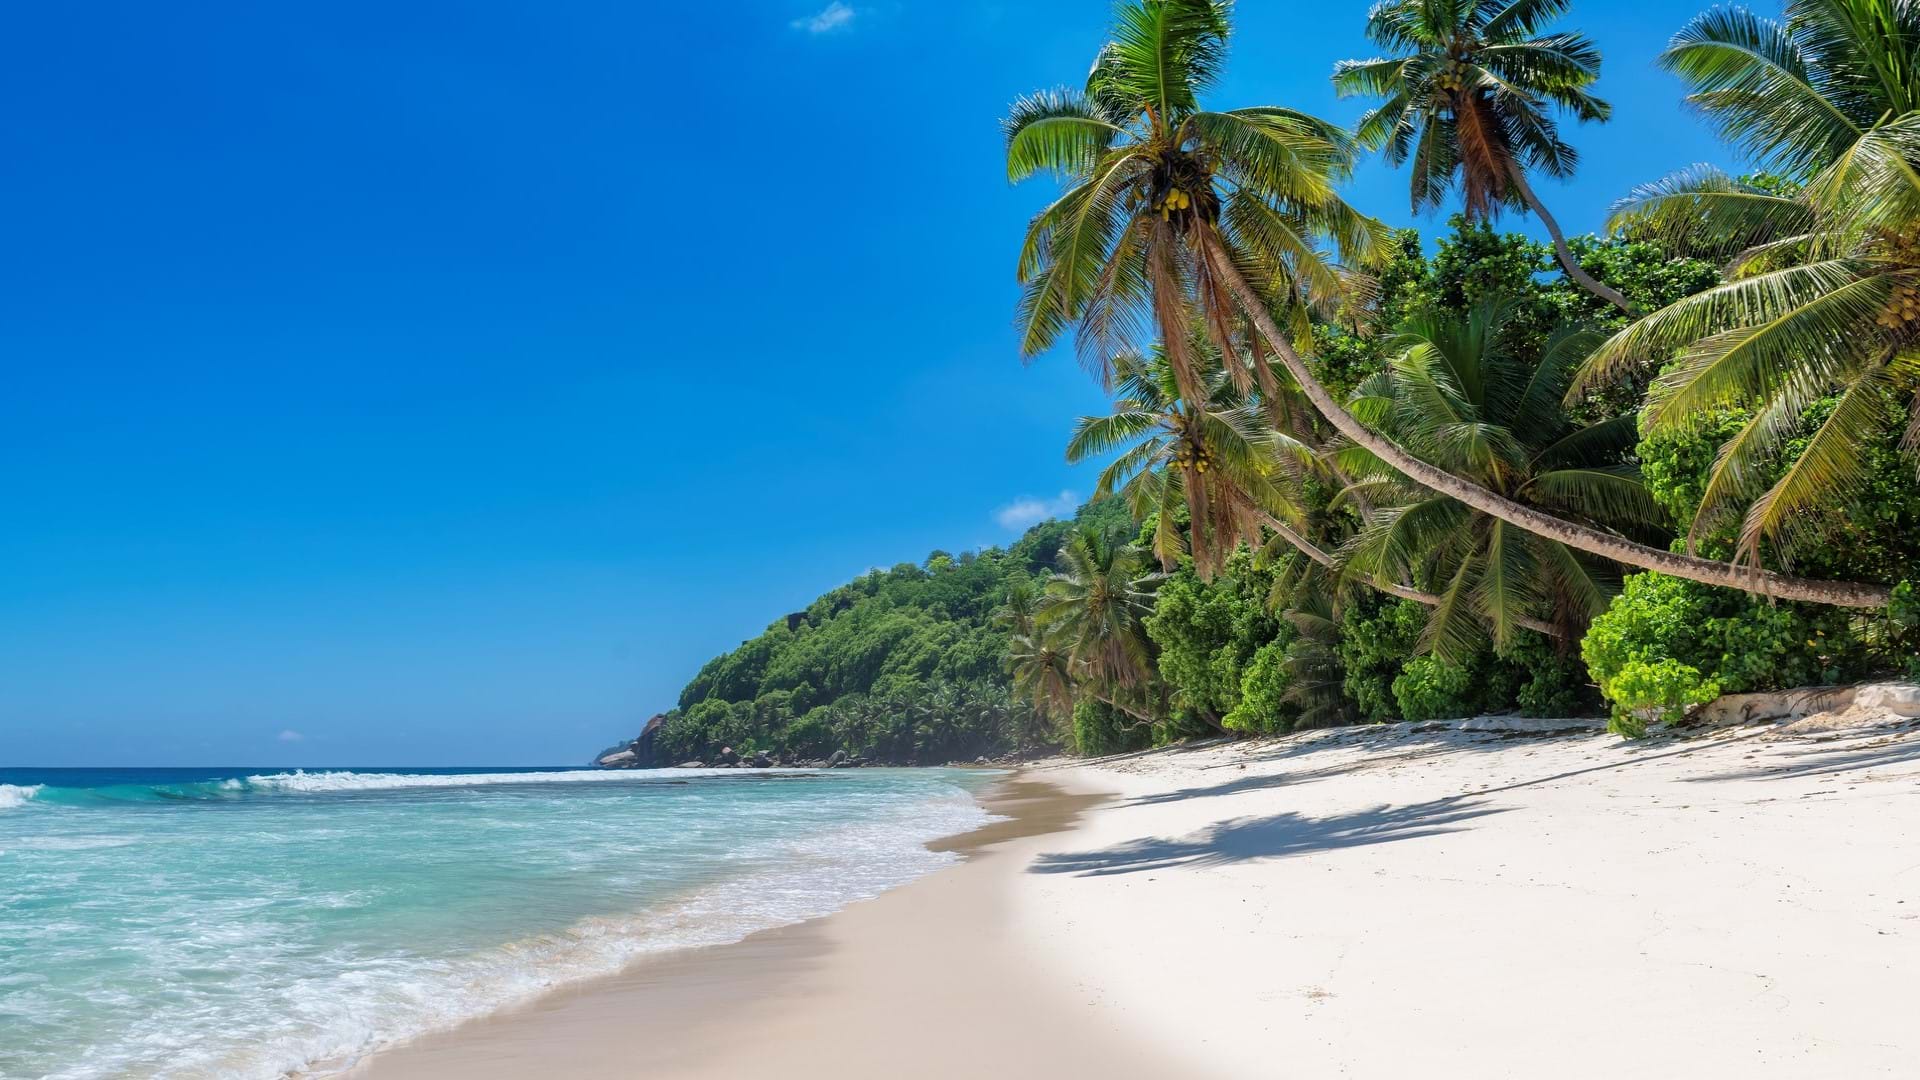 Prelepa plaža na putovanju u Jamajku. Beli pesak i divlja obala.